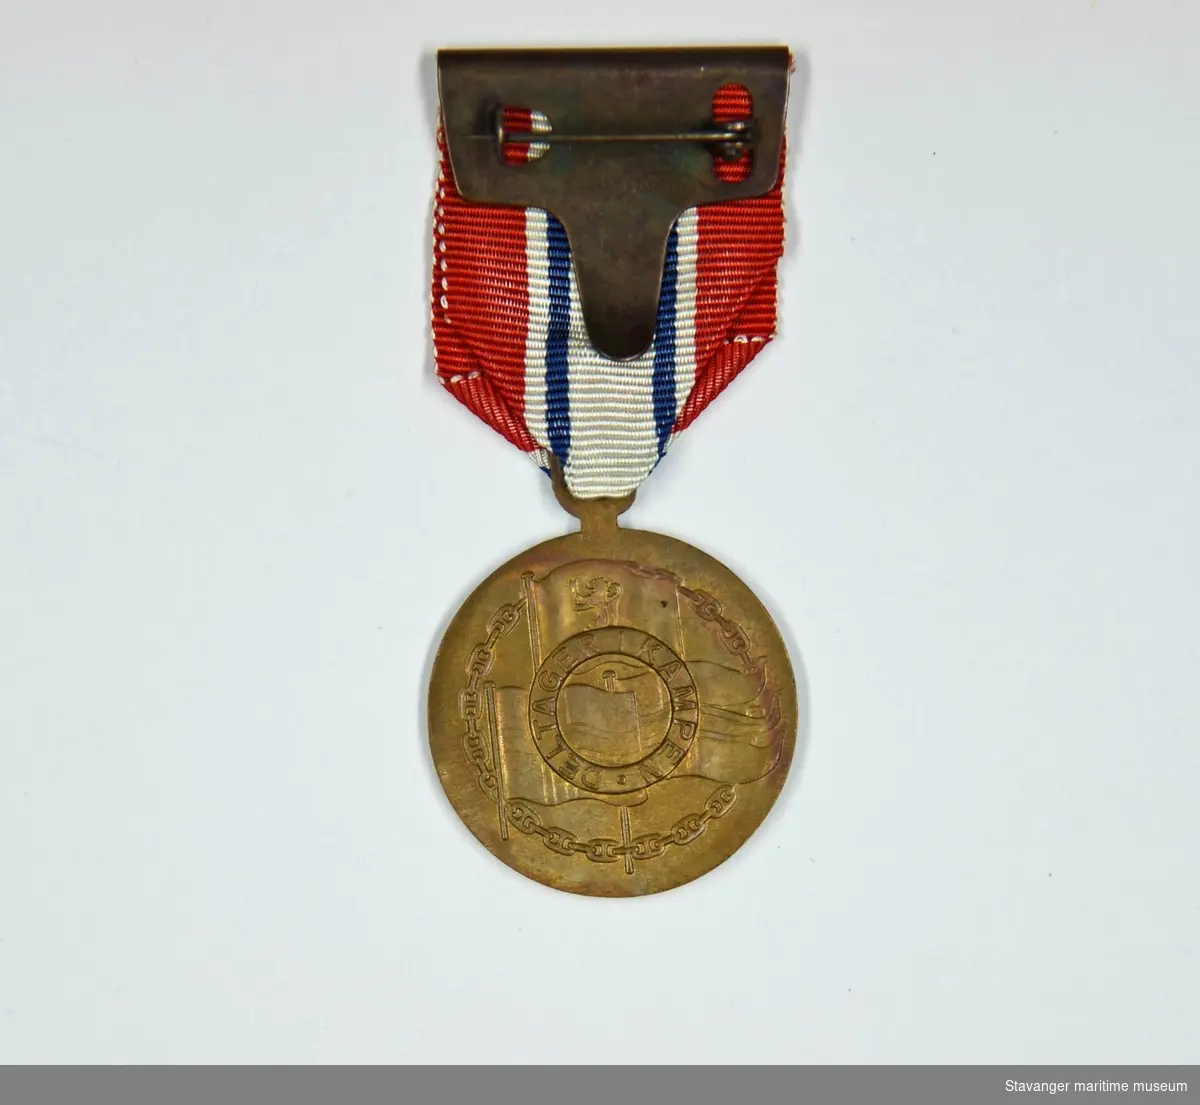 Deltakermedalje fra andre verdenskrig, i bronse. Har det norske riksvåpenet støpt i midten, og datoene langs kanten. Har en lenke med fargene til det norskeflagget.
